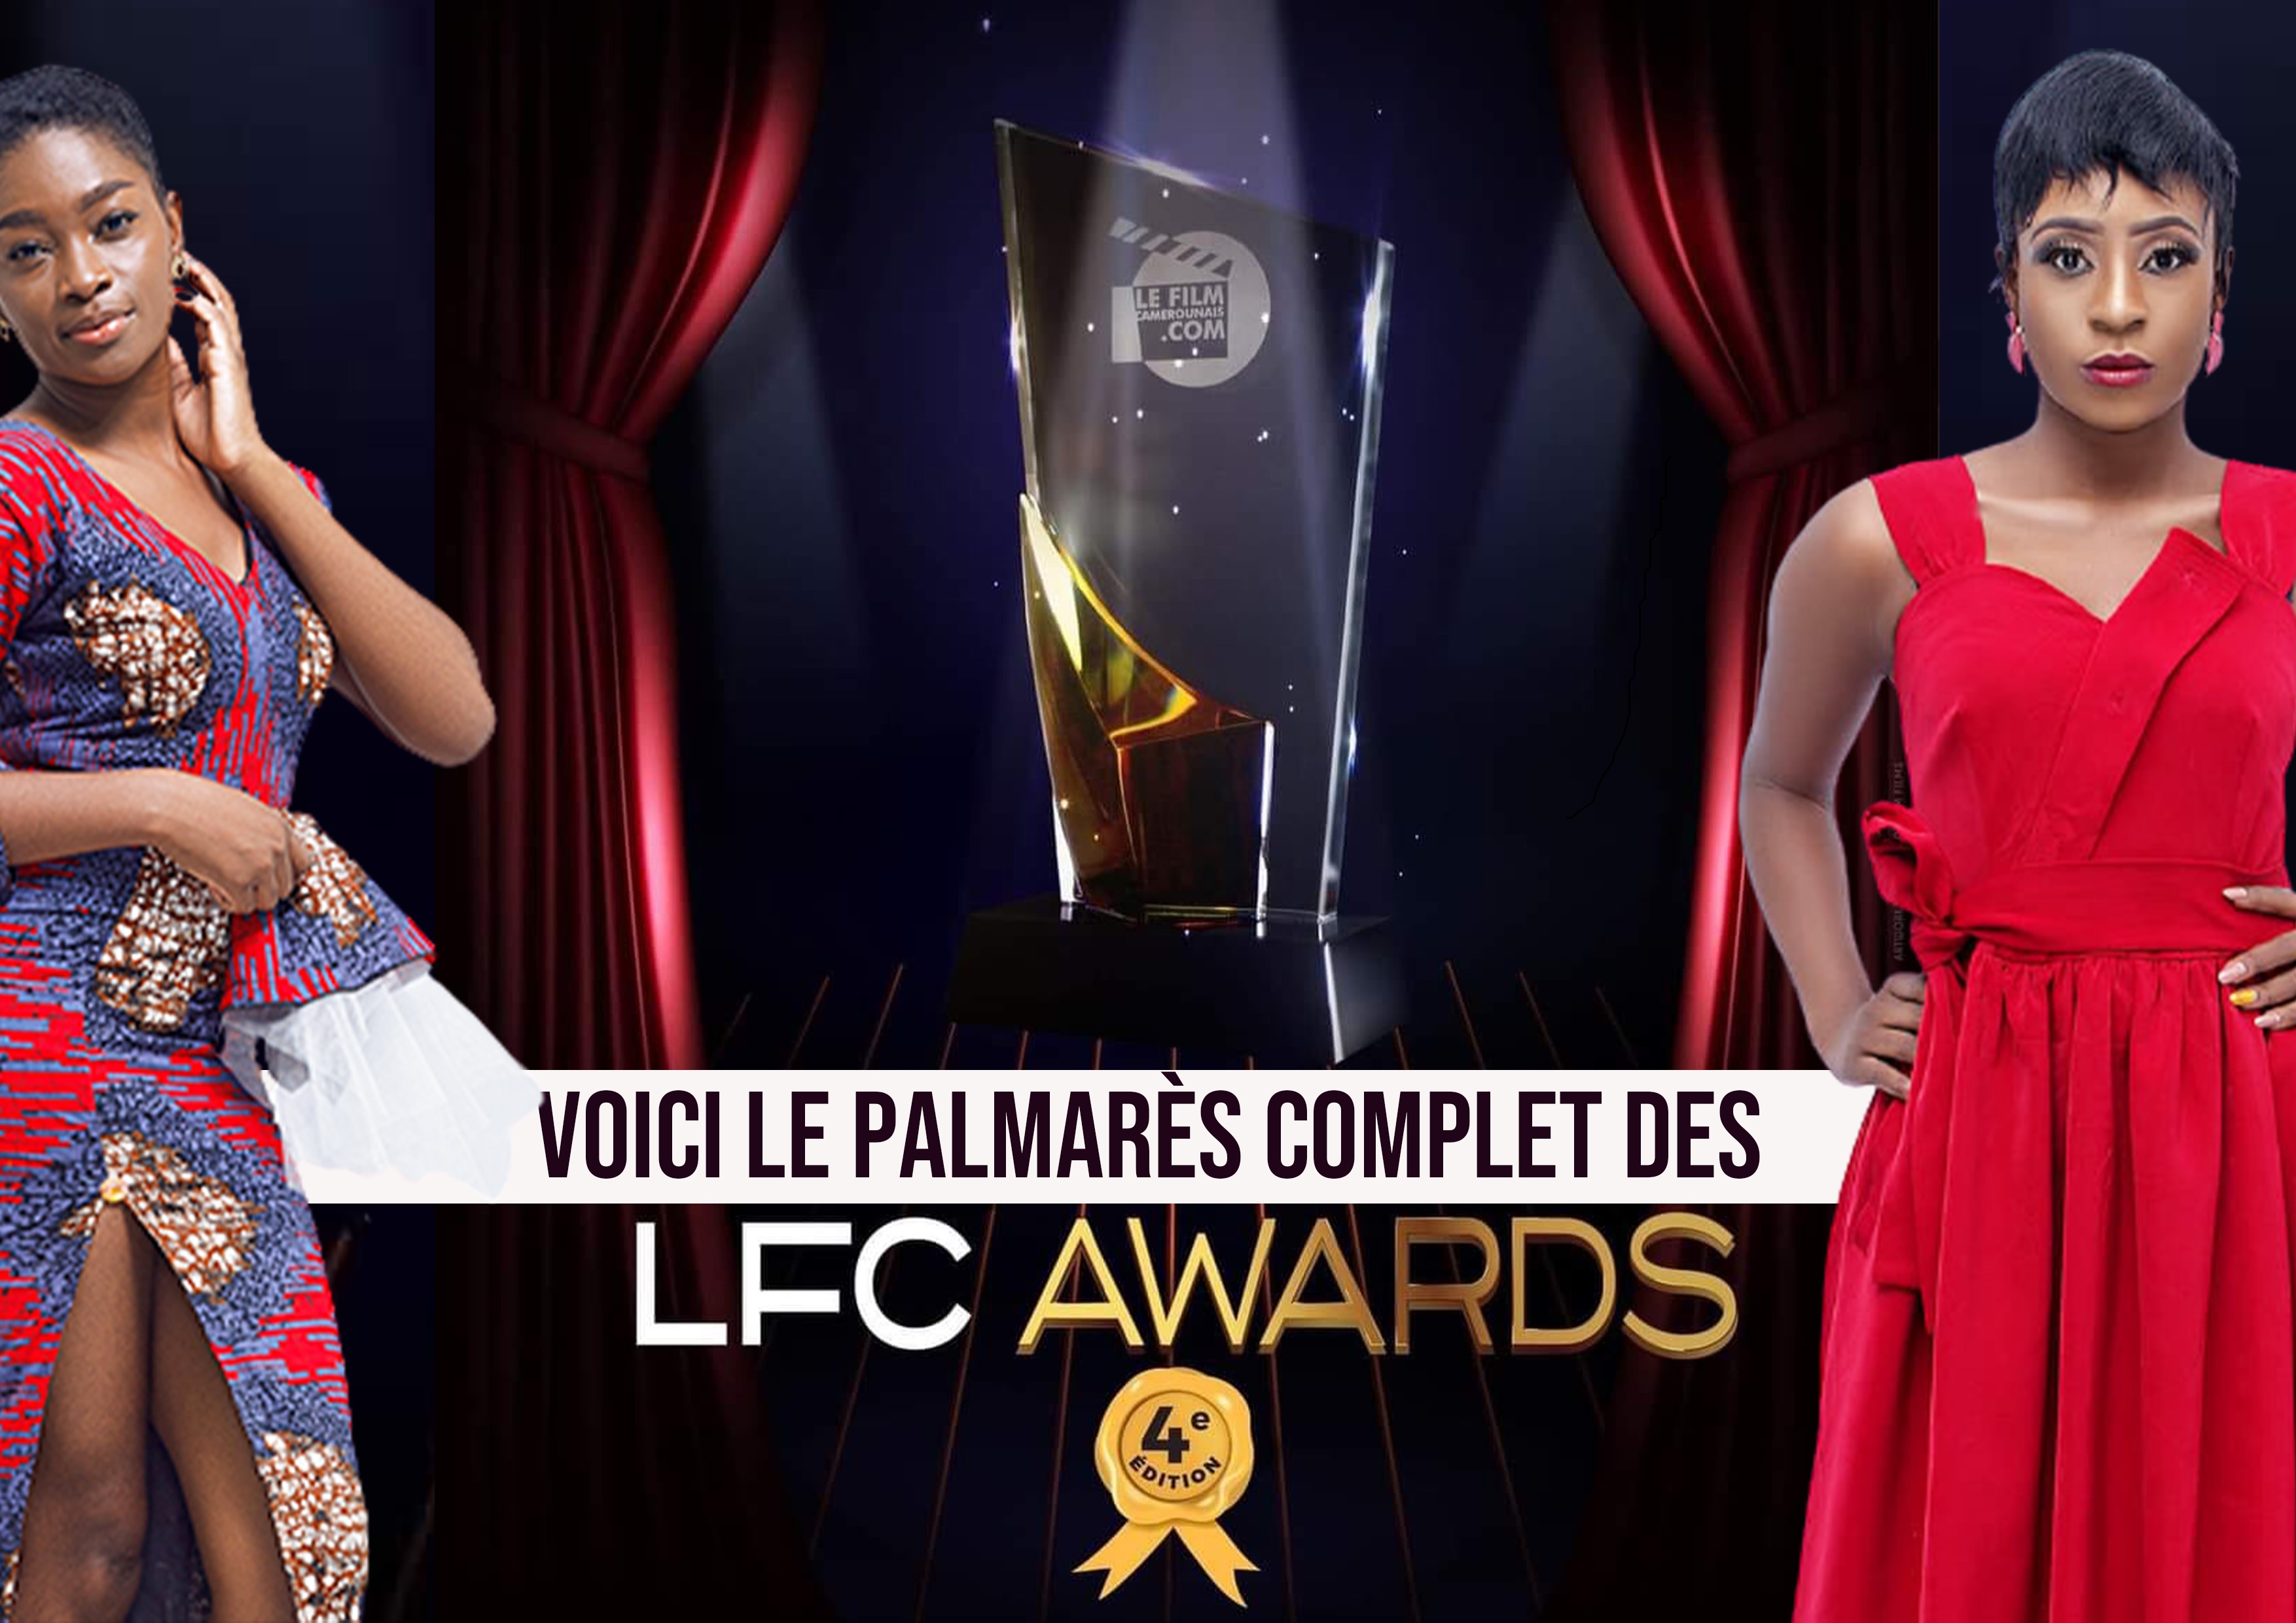 LFC AWARDS PALMARÈS